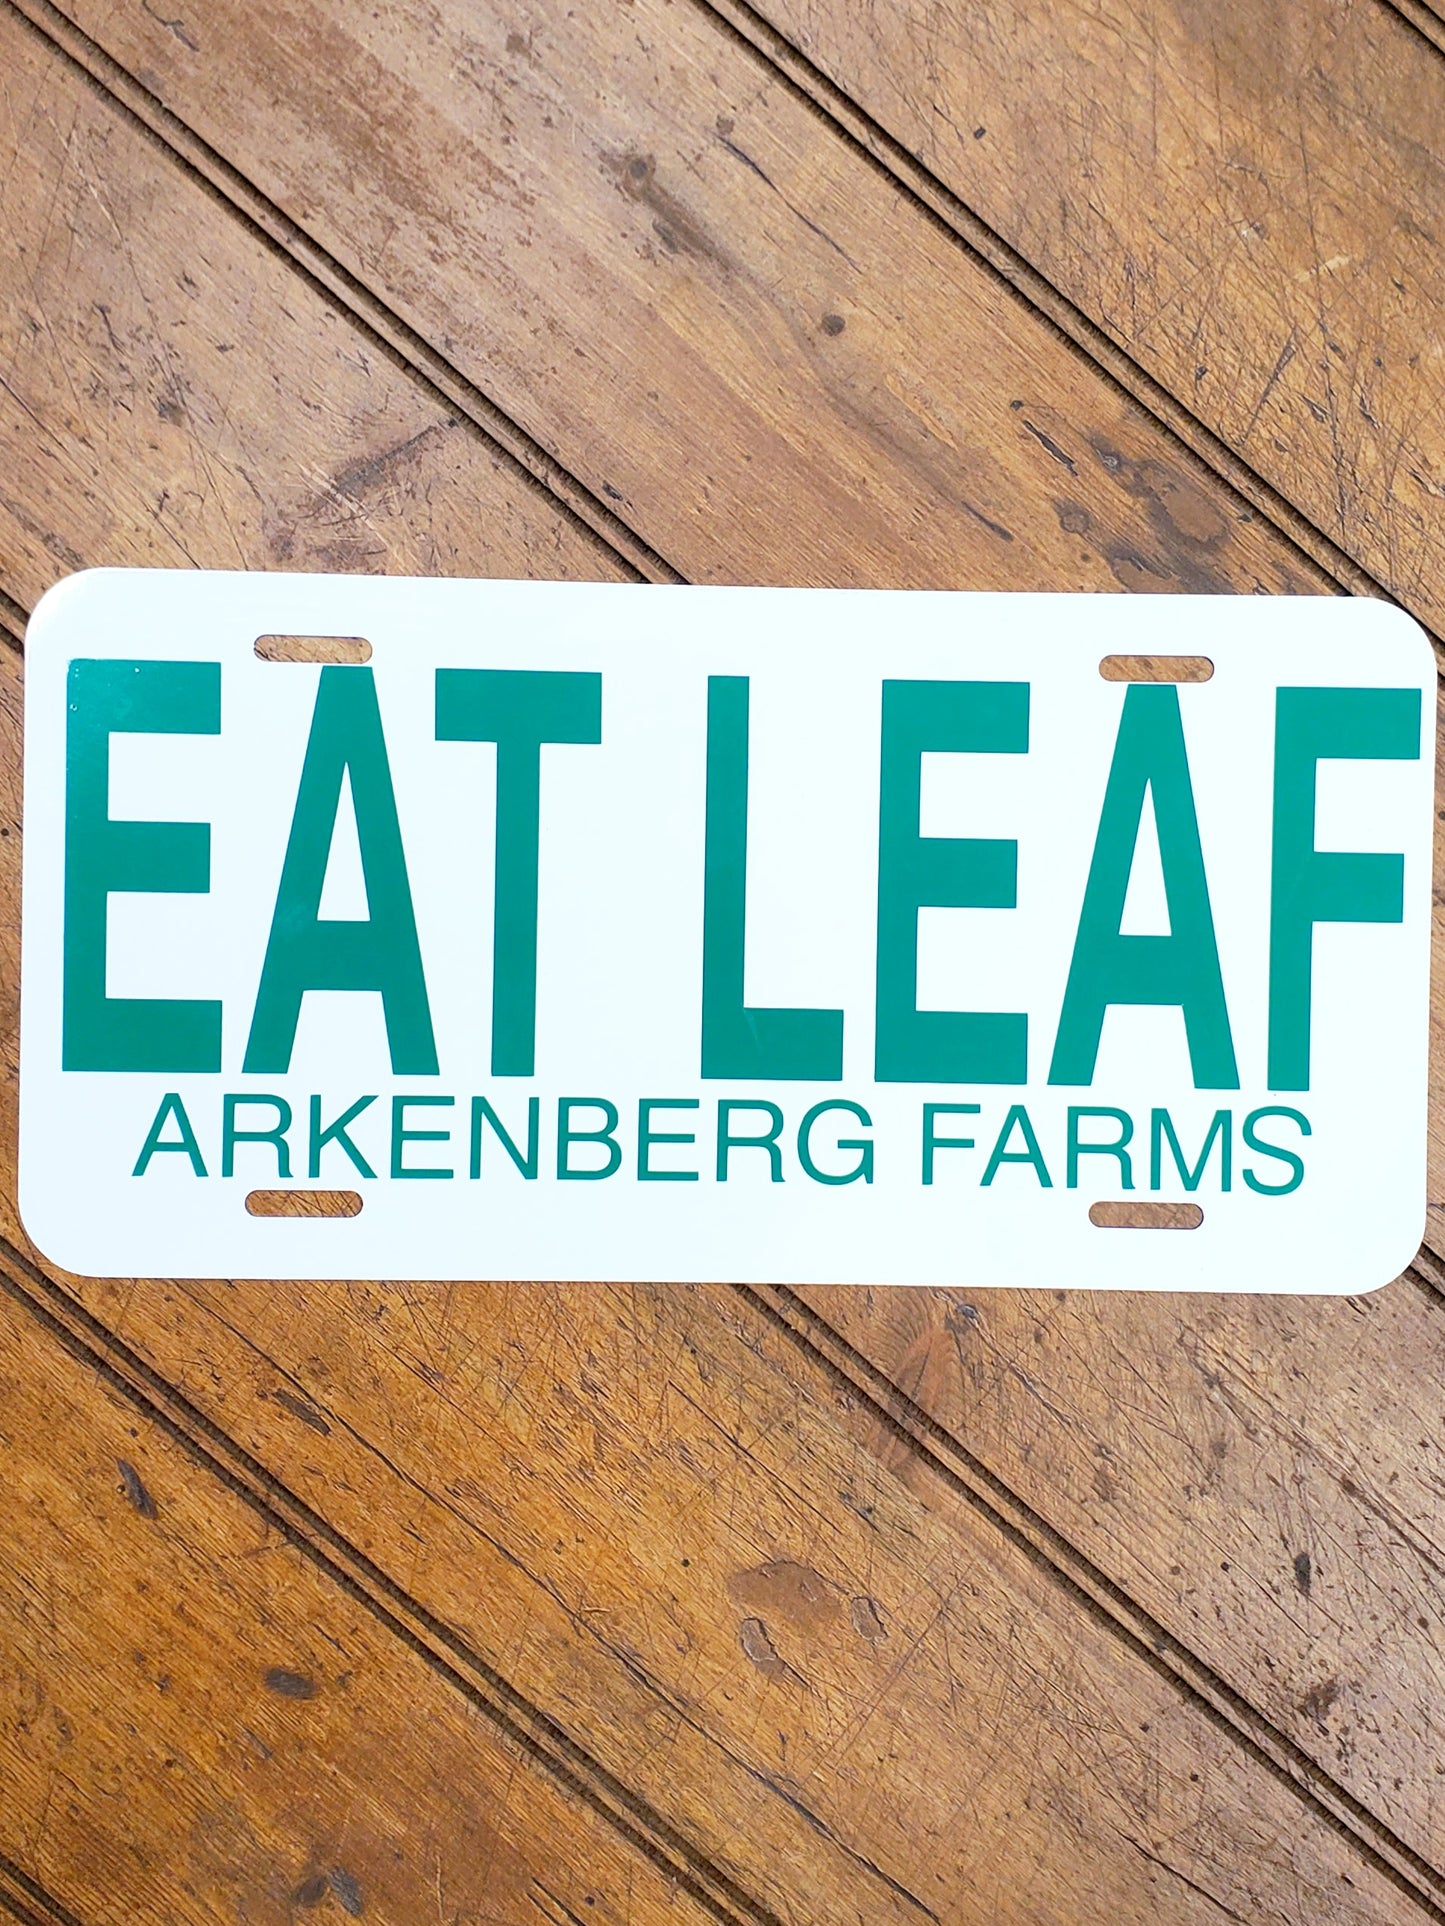 Eat Leaf - Vanity License Plate